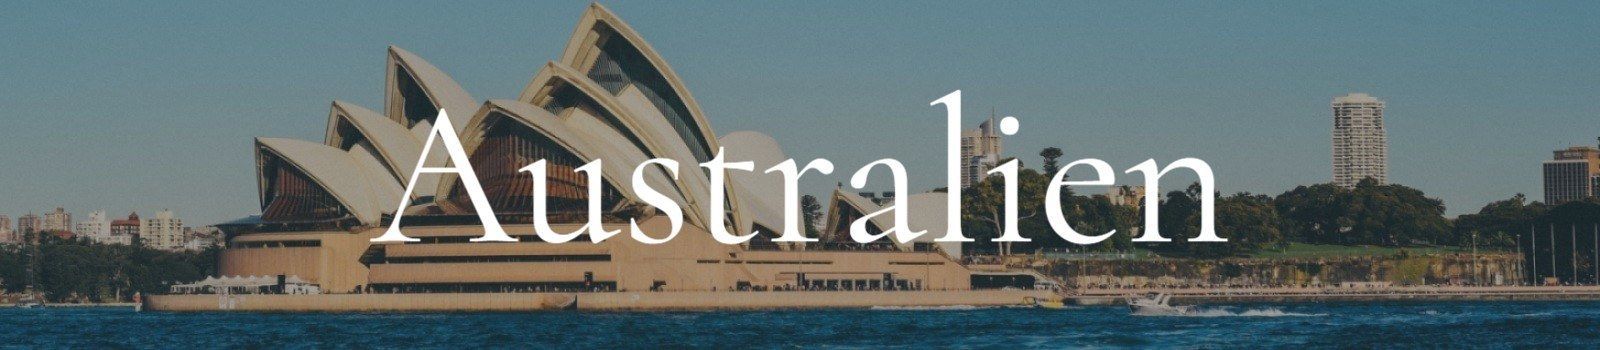 Australien Titelbild, Opera House, Sydney